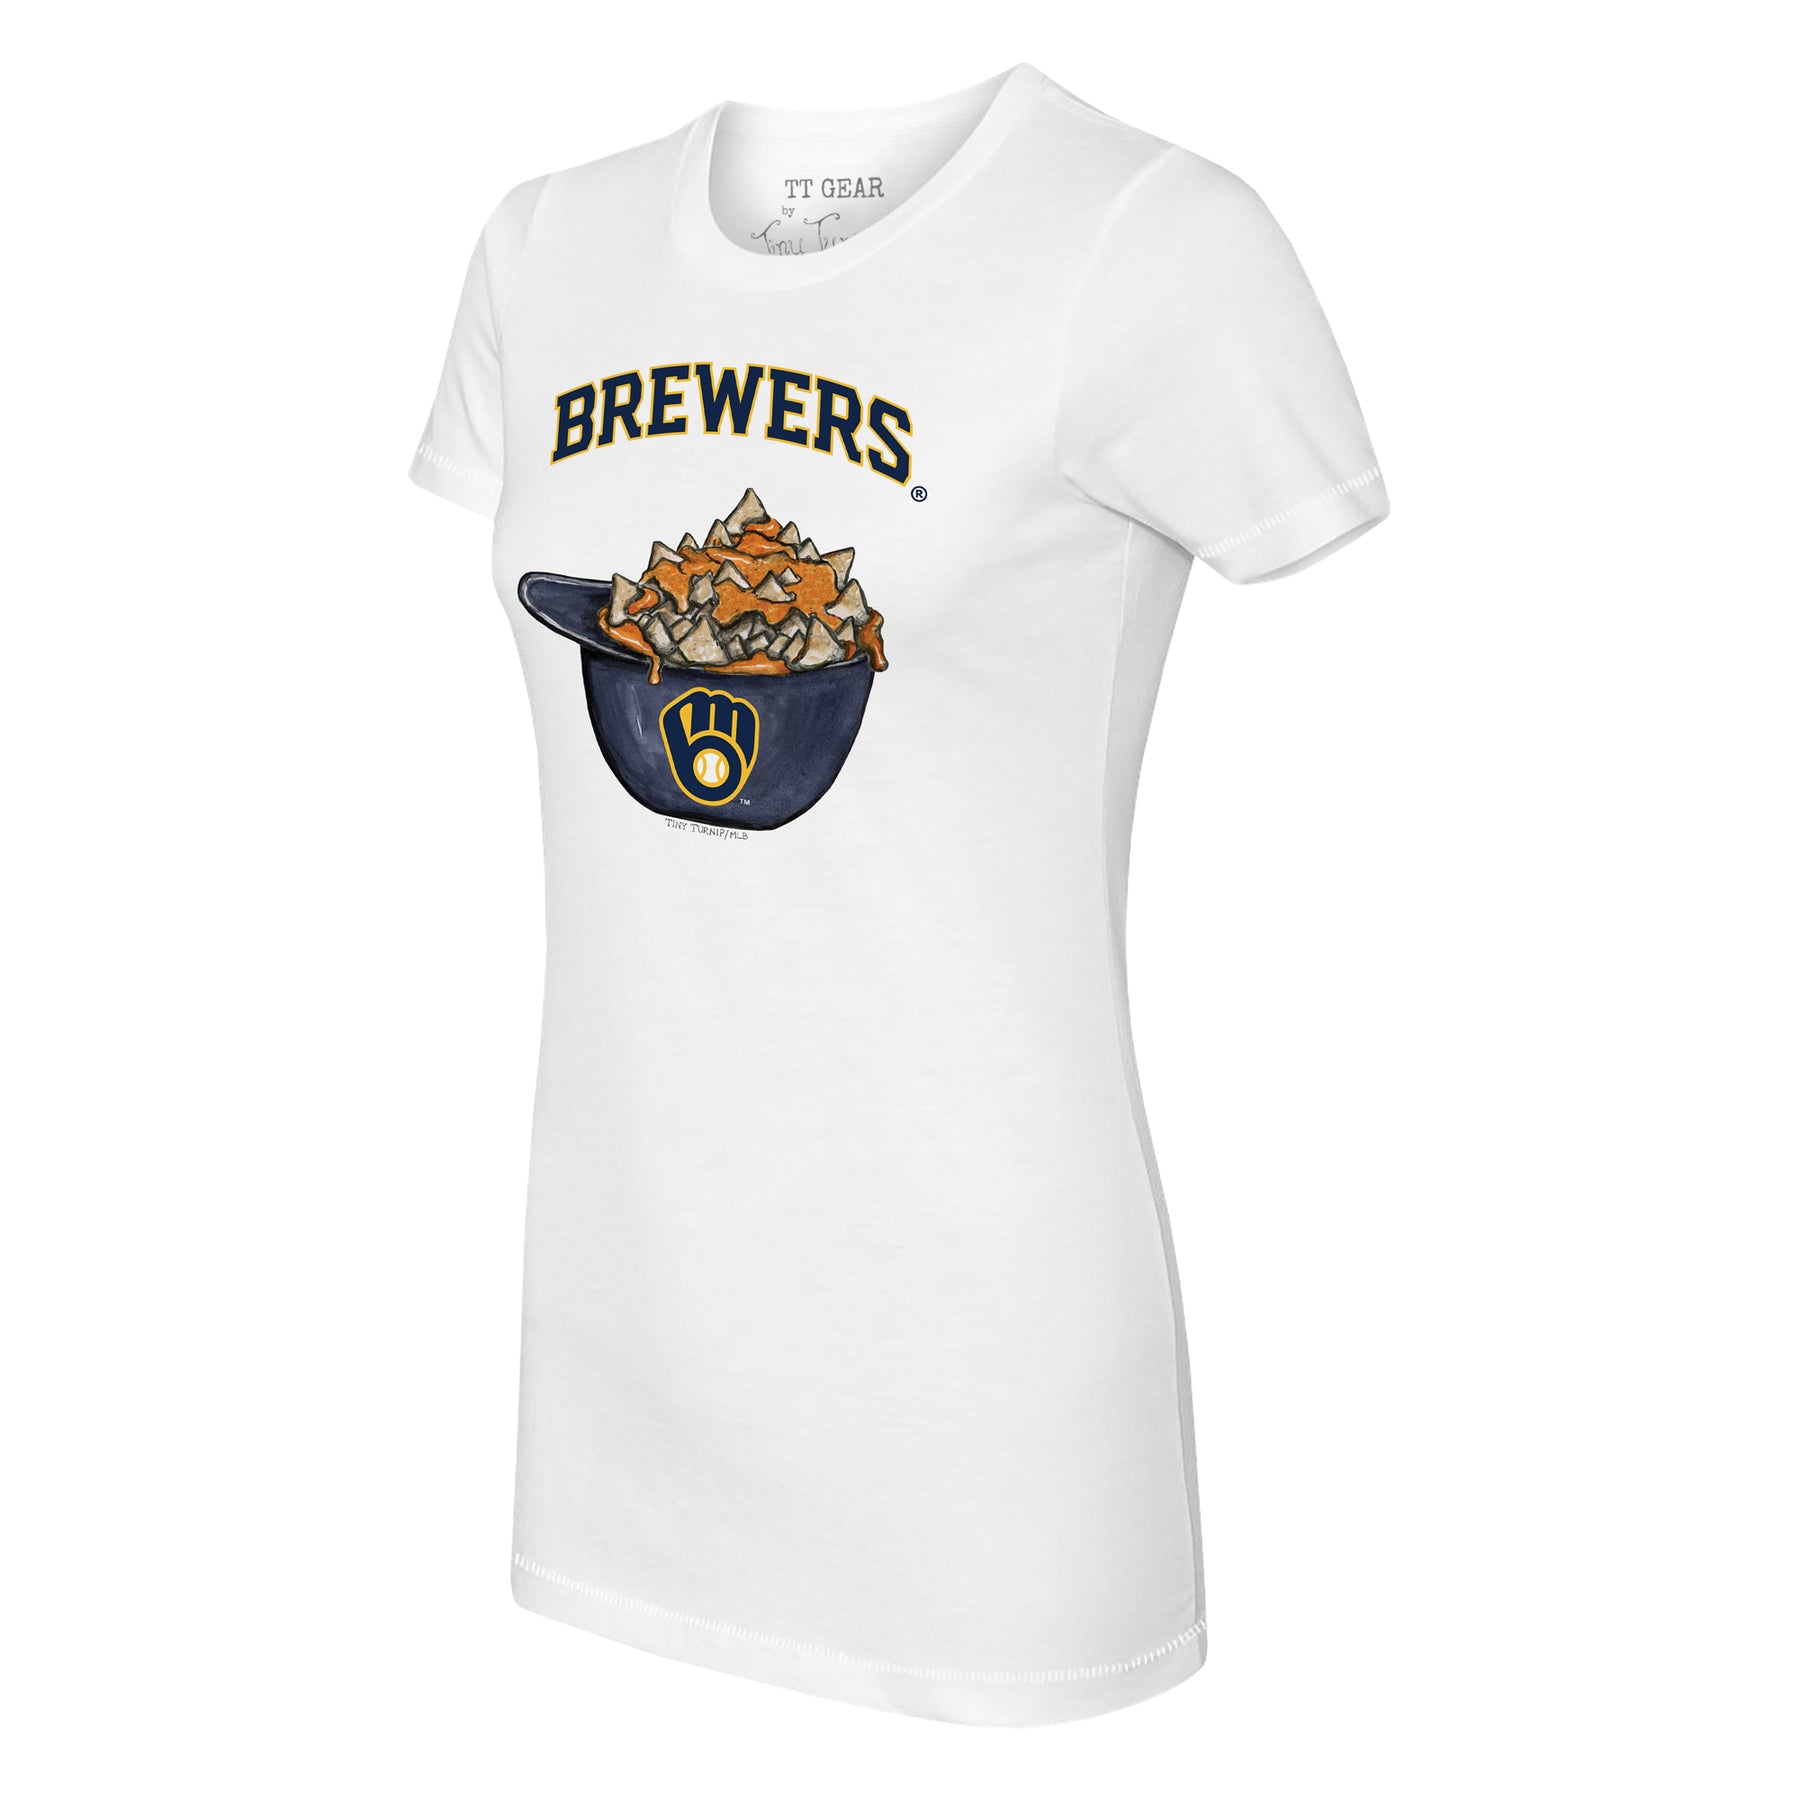 Milwaukee Brewers Nacho Helmet Tee Shirt Women's XS / White